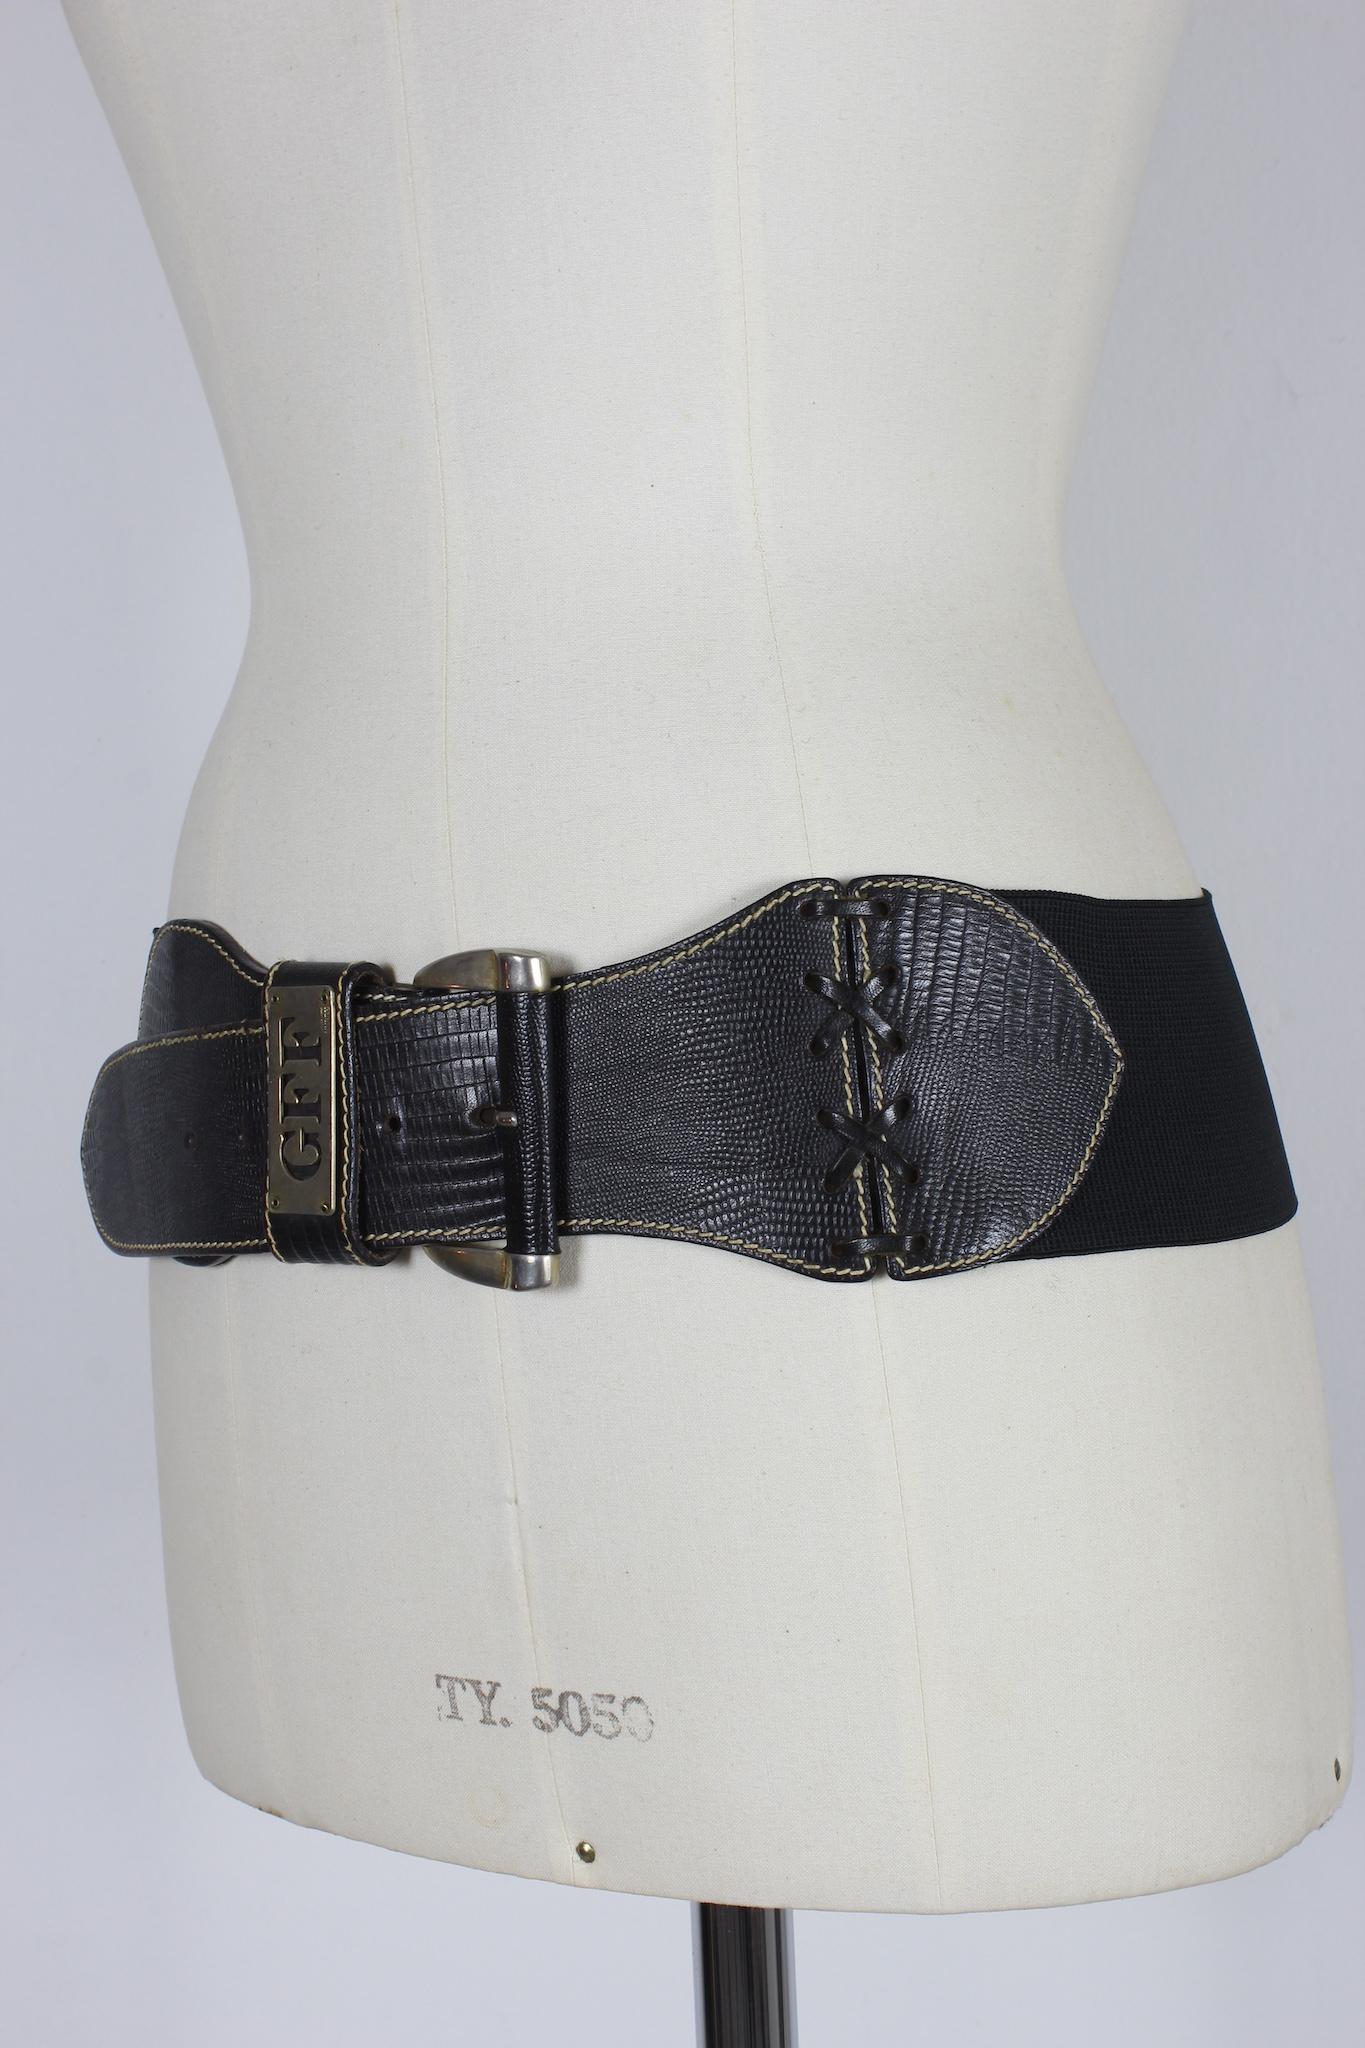 Gianfranco Ferre Vintage-Gürtel aus den 90ern. Schwarze Farbe, elastischer Stoff mit einem Teil des Verschlusses aus Leder. Hergestellt in Italien.

Länge: 97 cm
Breite: 8 cm